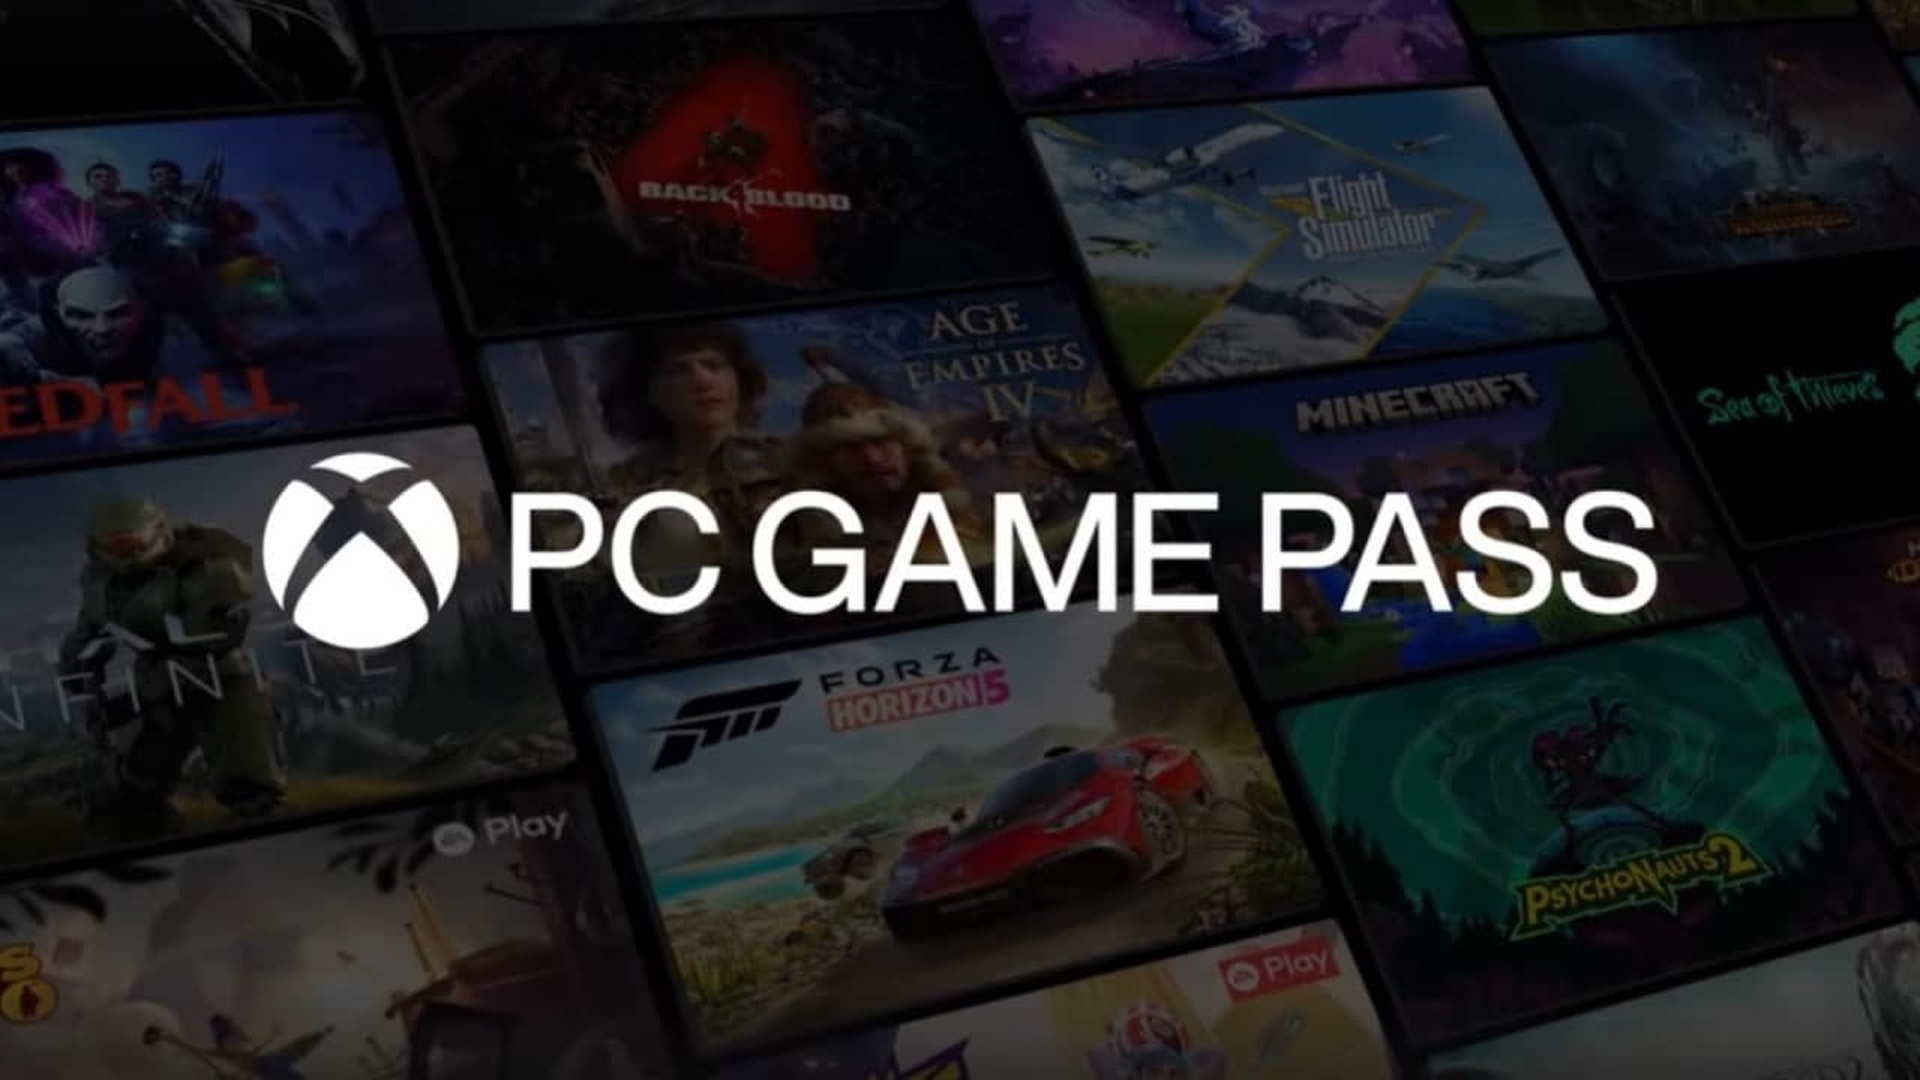 Xbox Game Pass se lanza en Perú de manera oficial a S/.26,90 por mes desde  el 11 de abril: los detalles contados por Microsoft, Videojuegos, Servicio de suscripción, Netflix